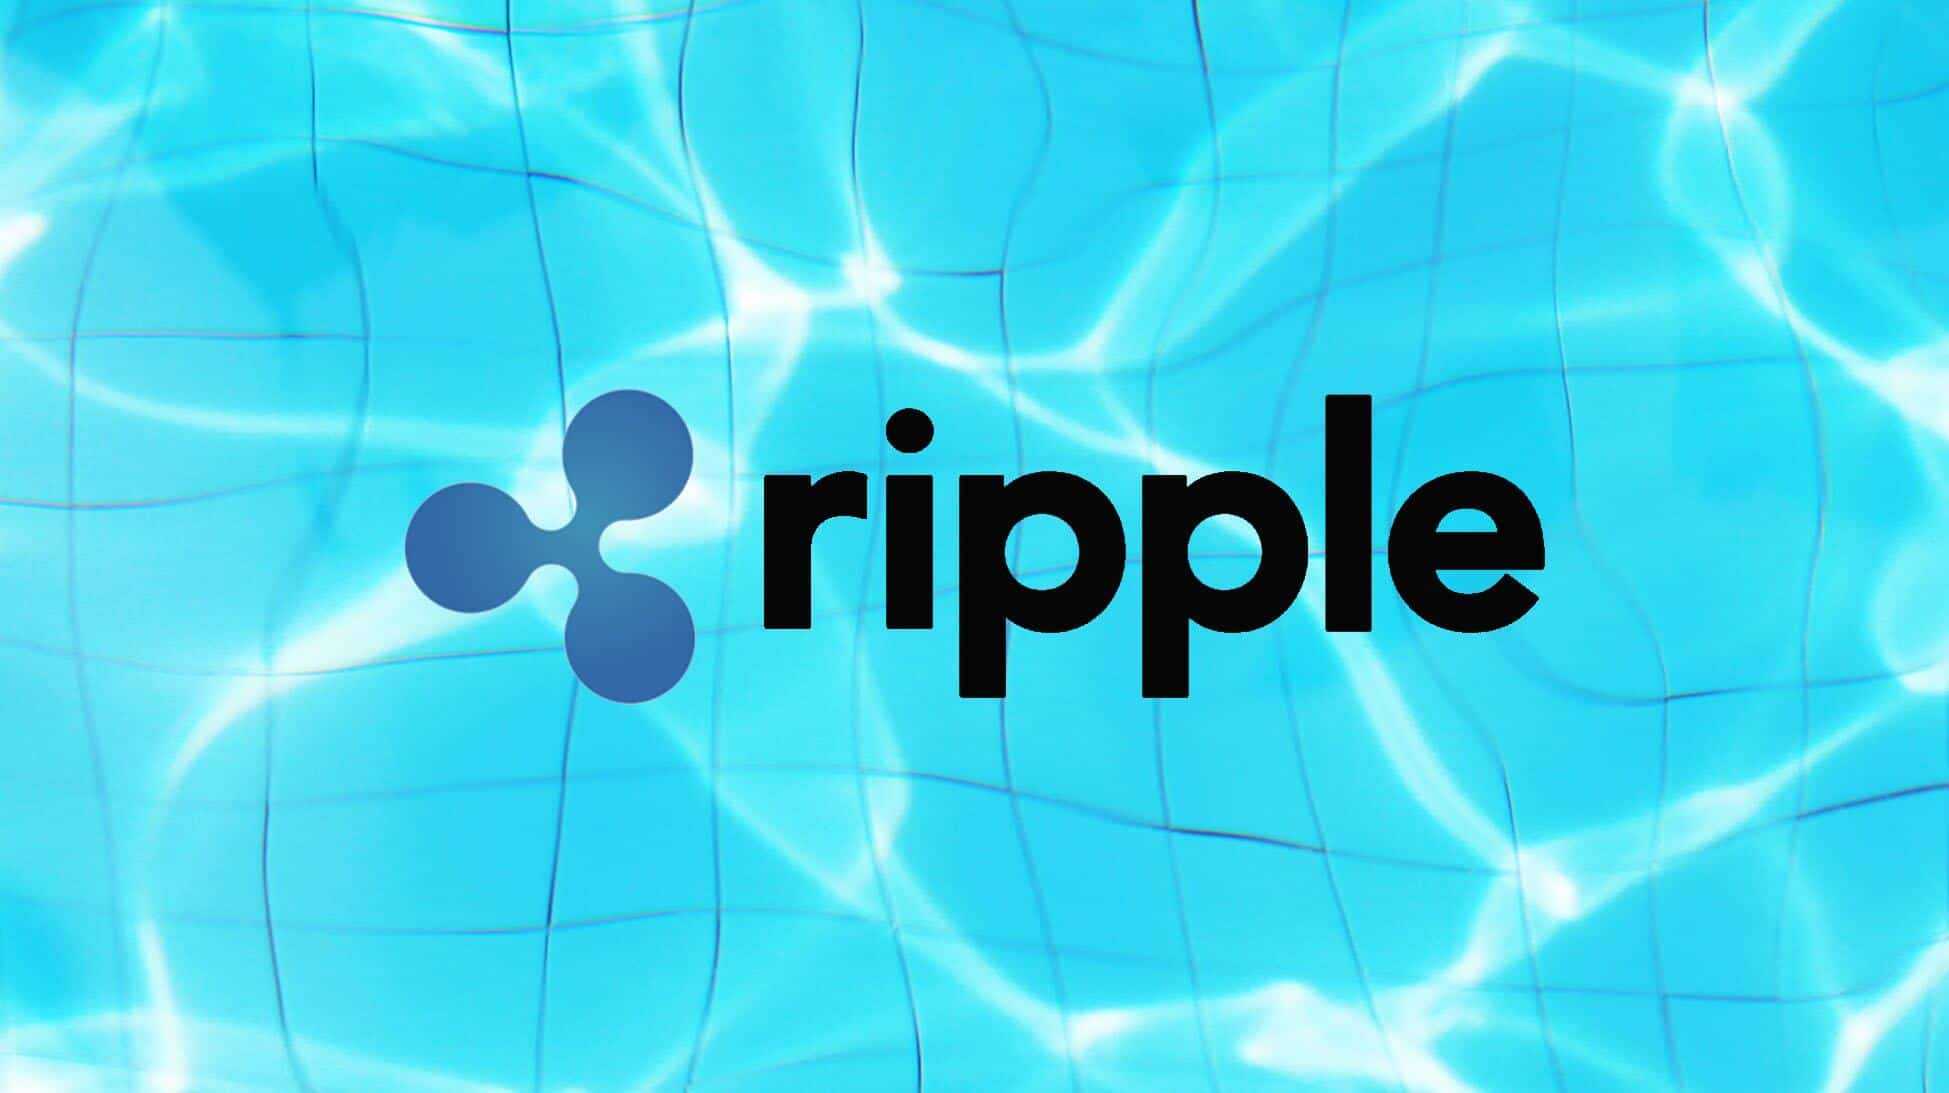 ripple,ripple xrp,xrp ripple,ripple news,ripple xrp news,ripple coin,ripple xrp news today,ripple lawsuit,ripple xrp chart,buy ripple,ripple sec,ripple price,ripple bitcoin,ripple xrp price,ripple daily news,grateful dead ripple,ripple grateful dead,sec ripple,dead ripple,ripple song,ripple live,ripple zero,ripple video,ripple hindi,ripple yorum,ripple lyrics,ripple crypto,ripple crisis,ripple update,ripple xrp ceo,ripple nieuws,xrp ripple hindi,ripple coin news,xrp ripple price